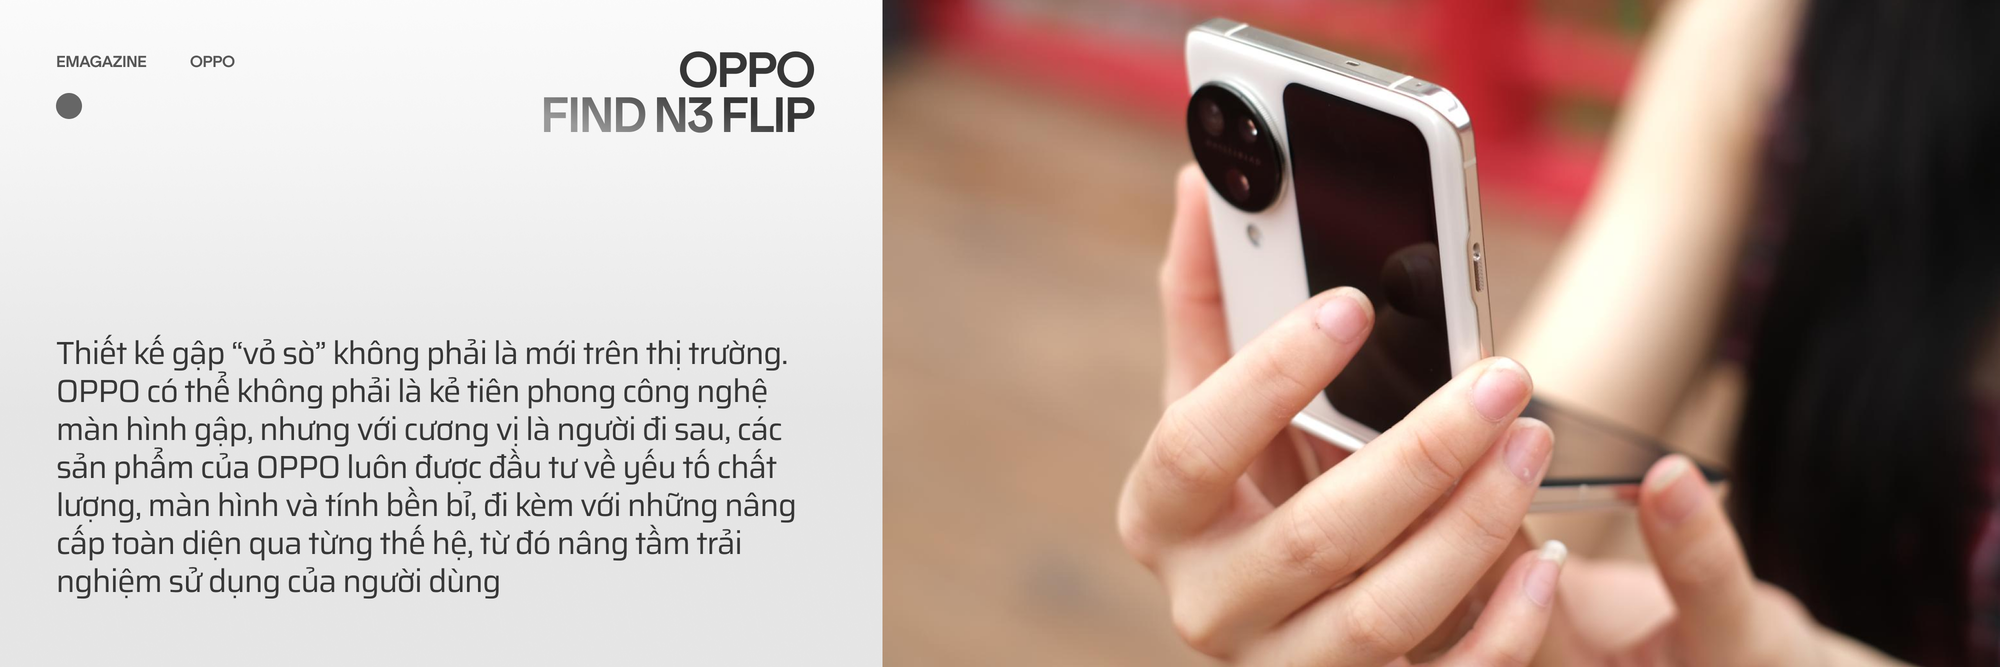 OPPO Find N3 Flip và hành trình đi tìm chiếc smartphone gập toàn diện - Ảnh 4.